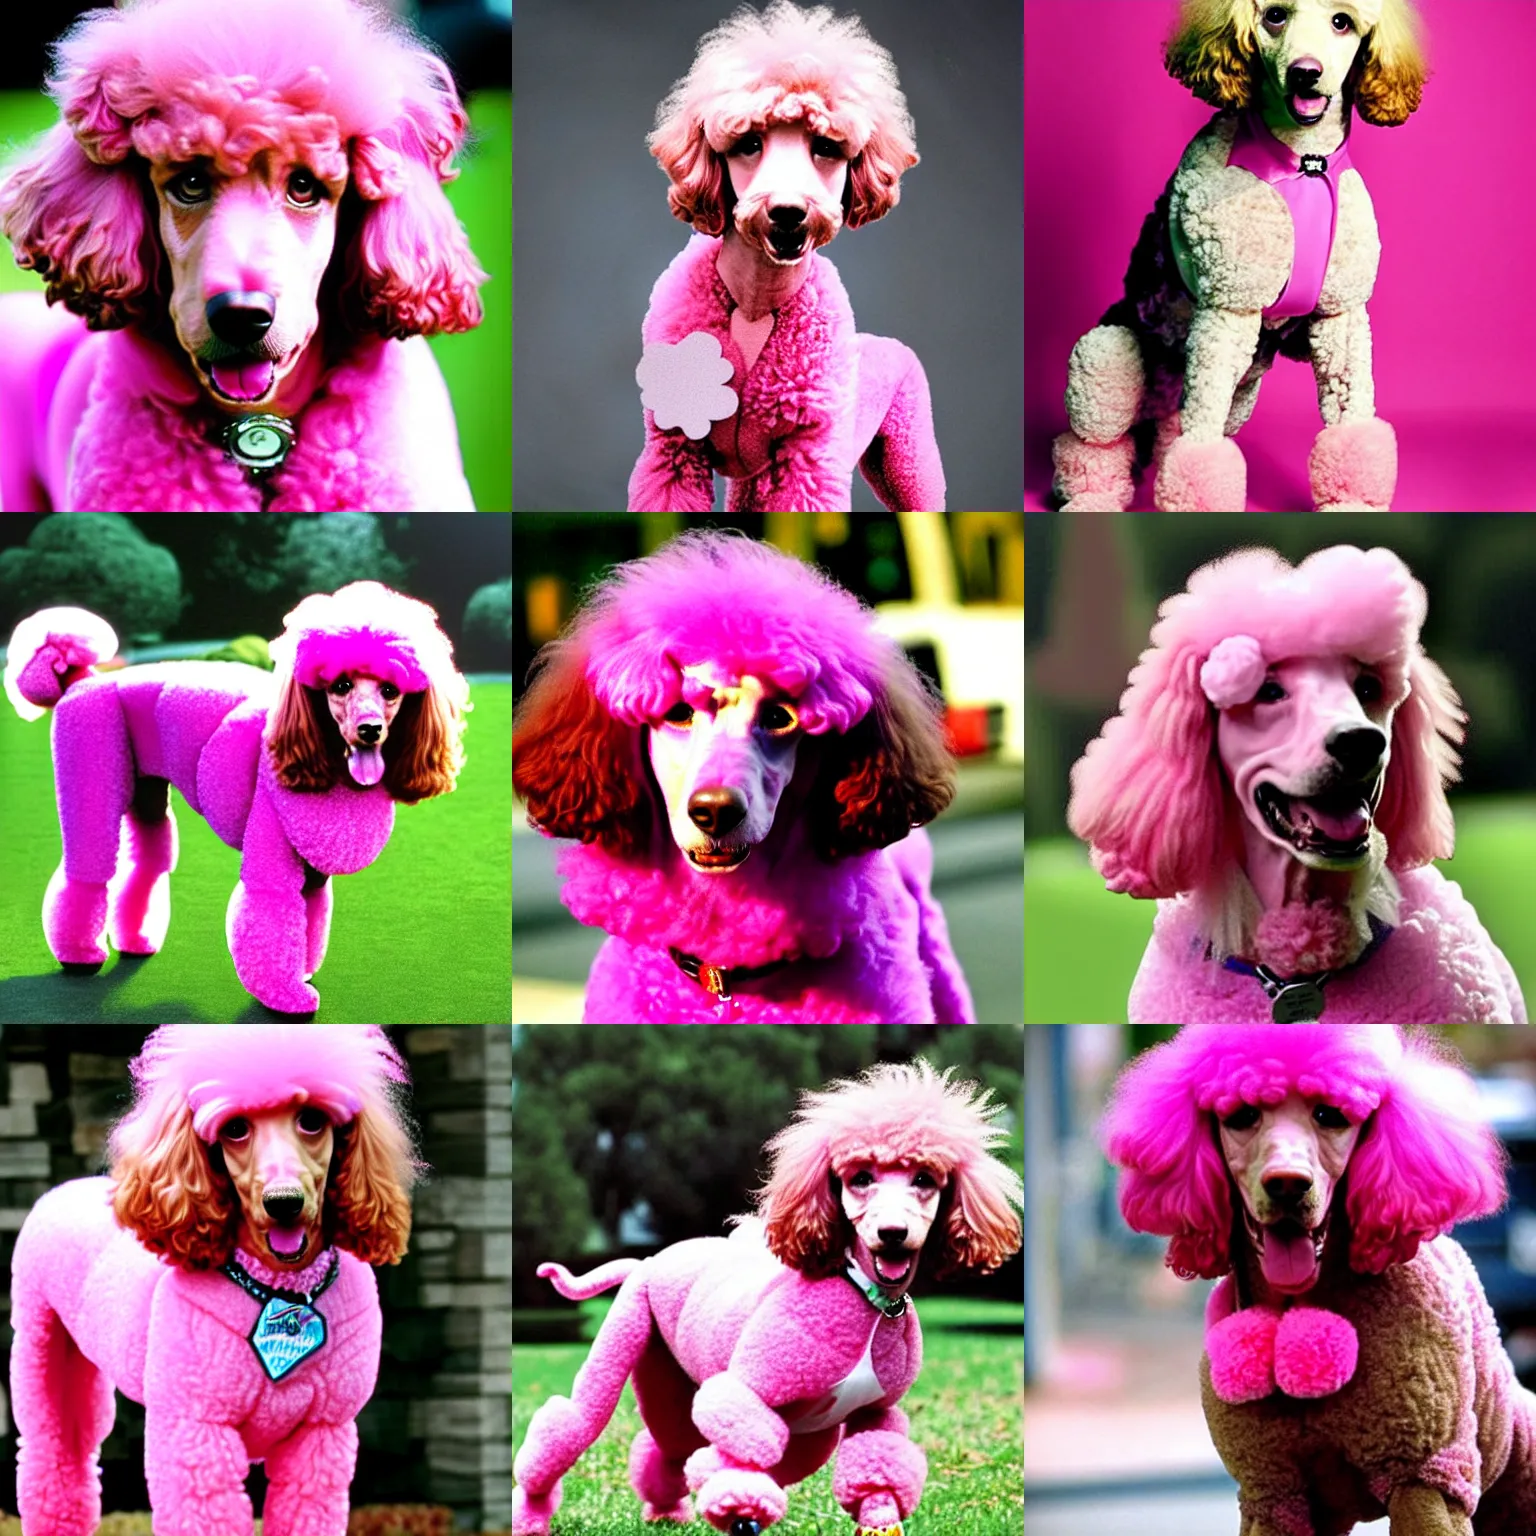 Prompt: kevin sorbo as pink poodle, poodle hybrid